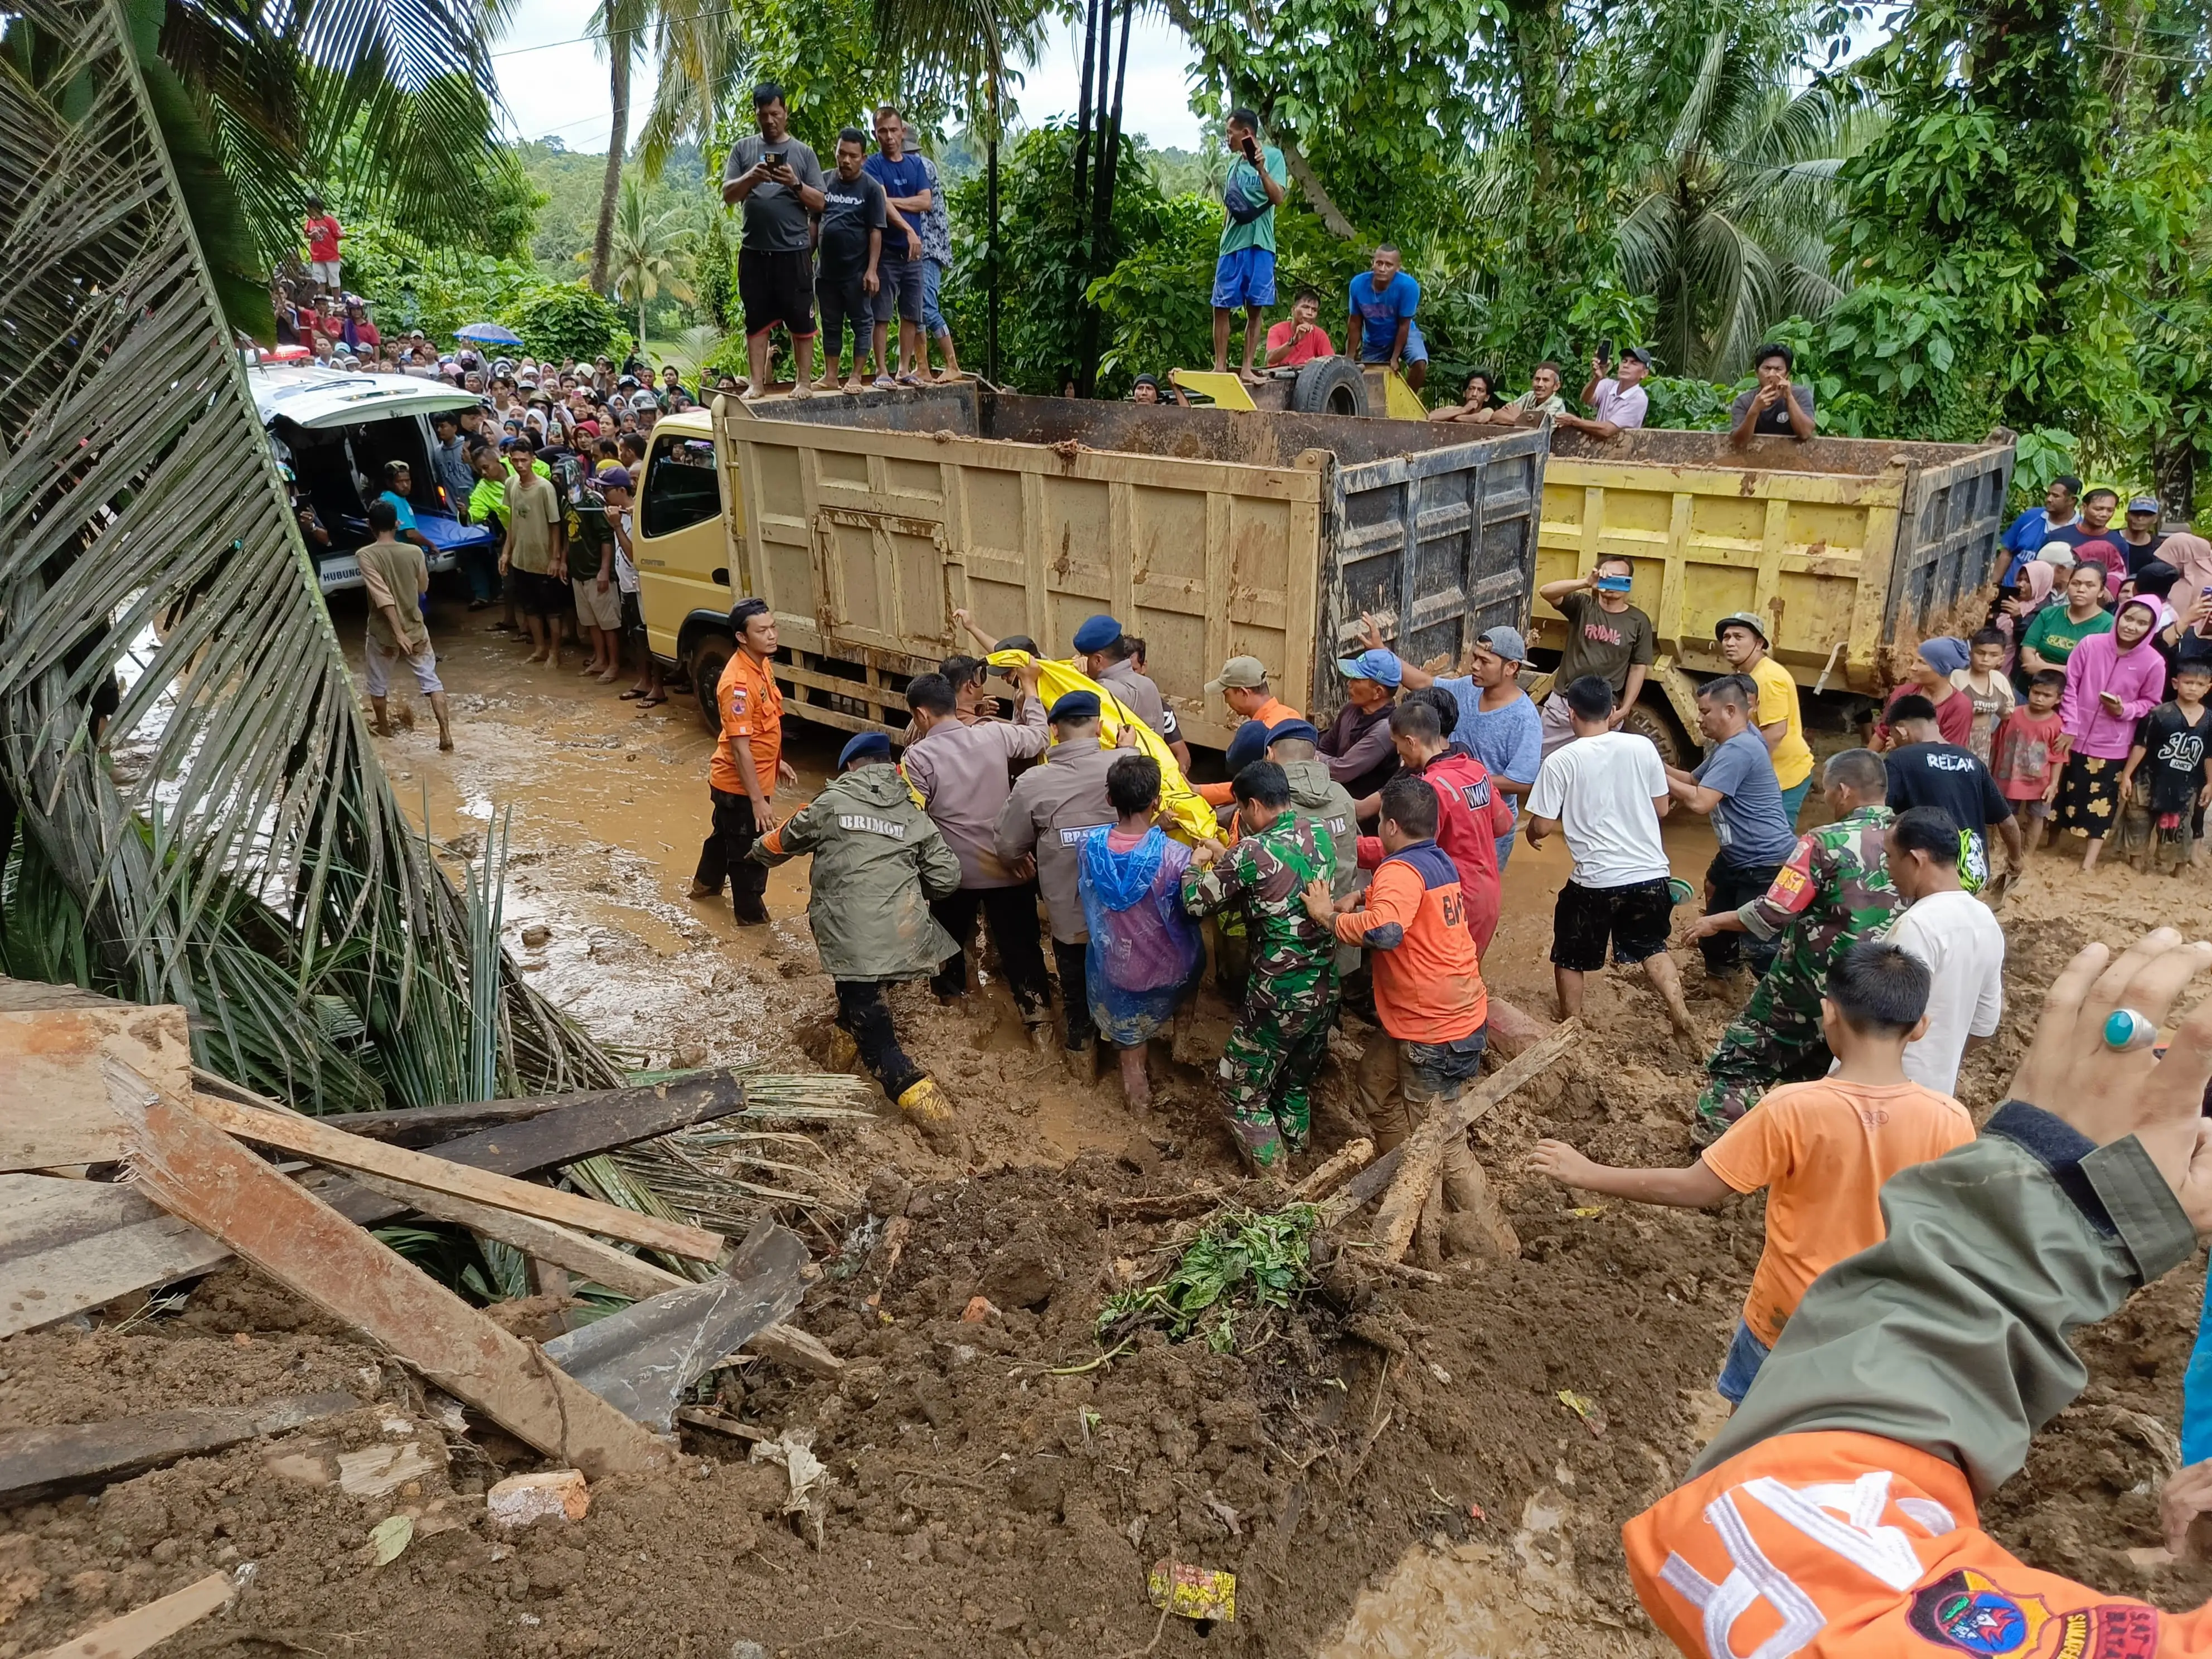 [UPDATE] - Tiga Orang Meninggal Dunia Pasca Banjir dan Longsor di Kabupaten Padang Pariaman